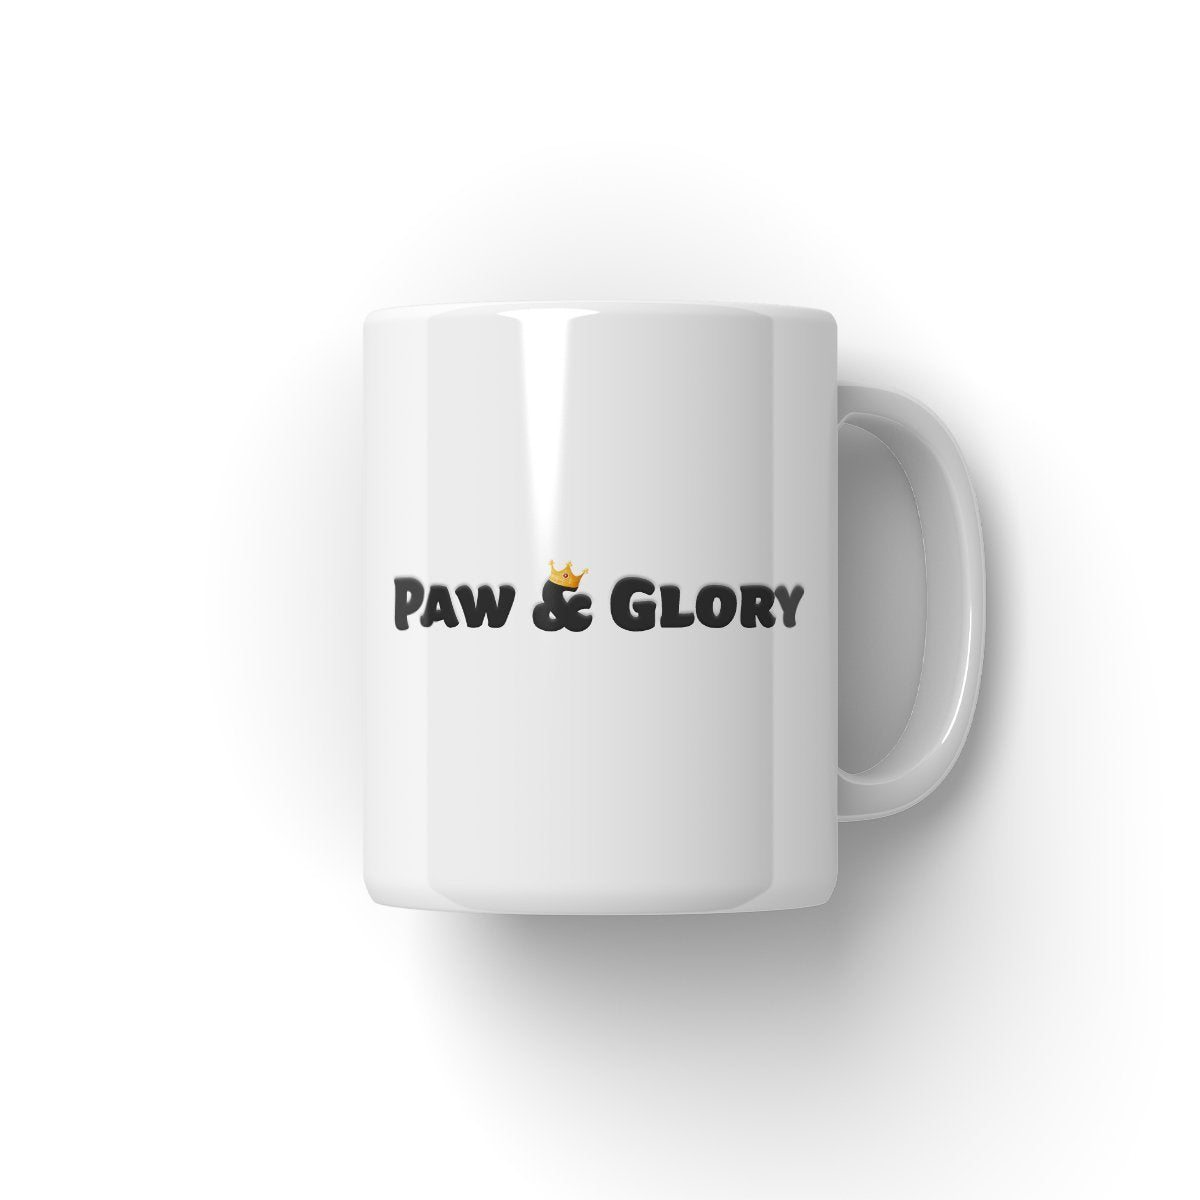 Her Ladyship: Custom Pet Mug - Paw & Glory - #pet portraits# - #dog portraits# - #pet portraits uk#paw & glory, custom pet portrait Mug,pet on a mug, make your own coffee mugs, dog face on mug, personalized dog mugs, coffee mug with dogs face